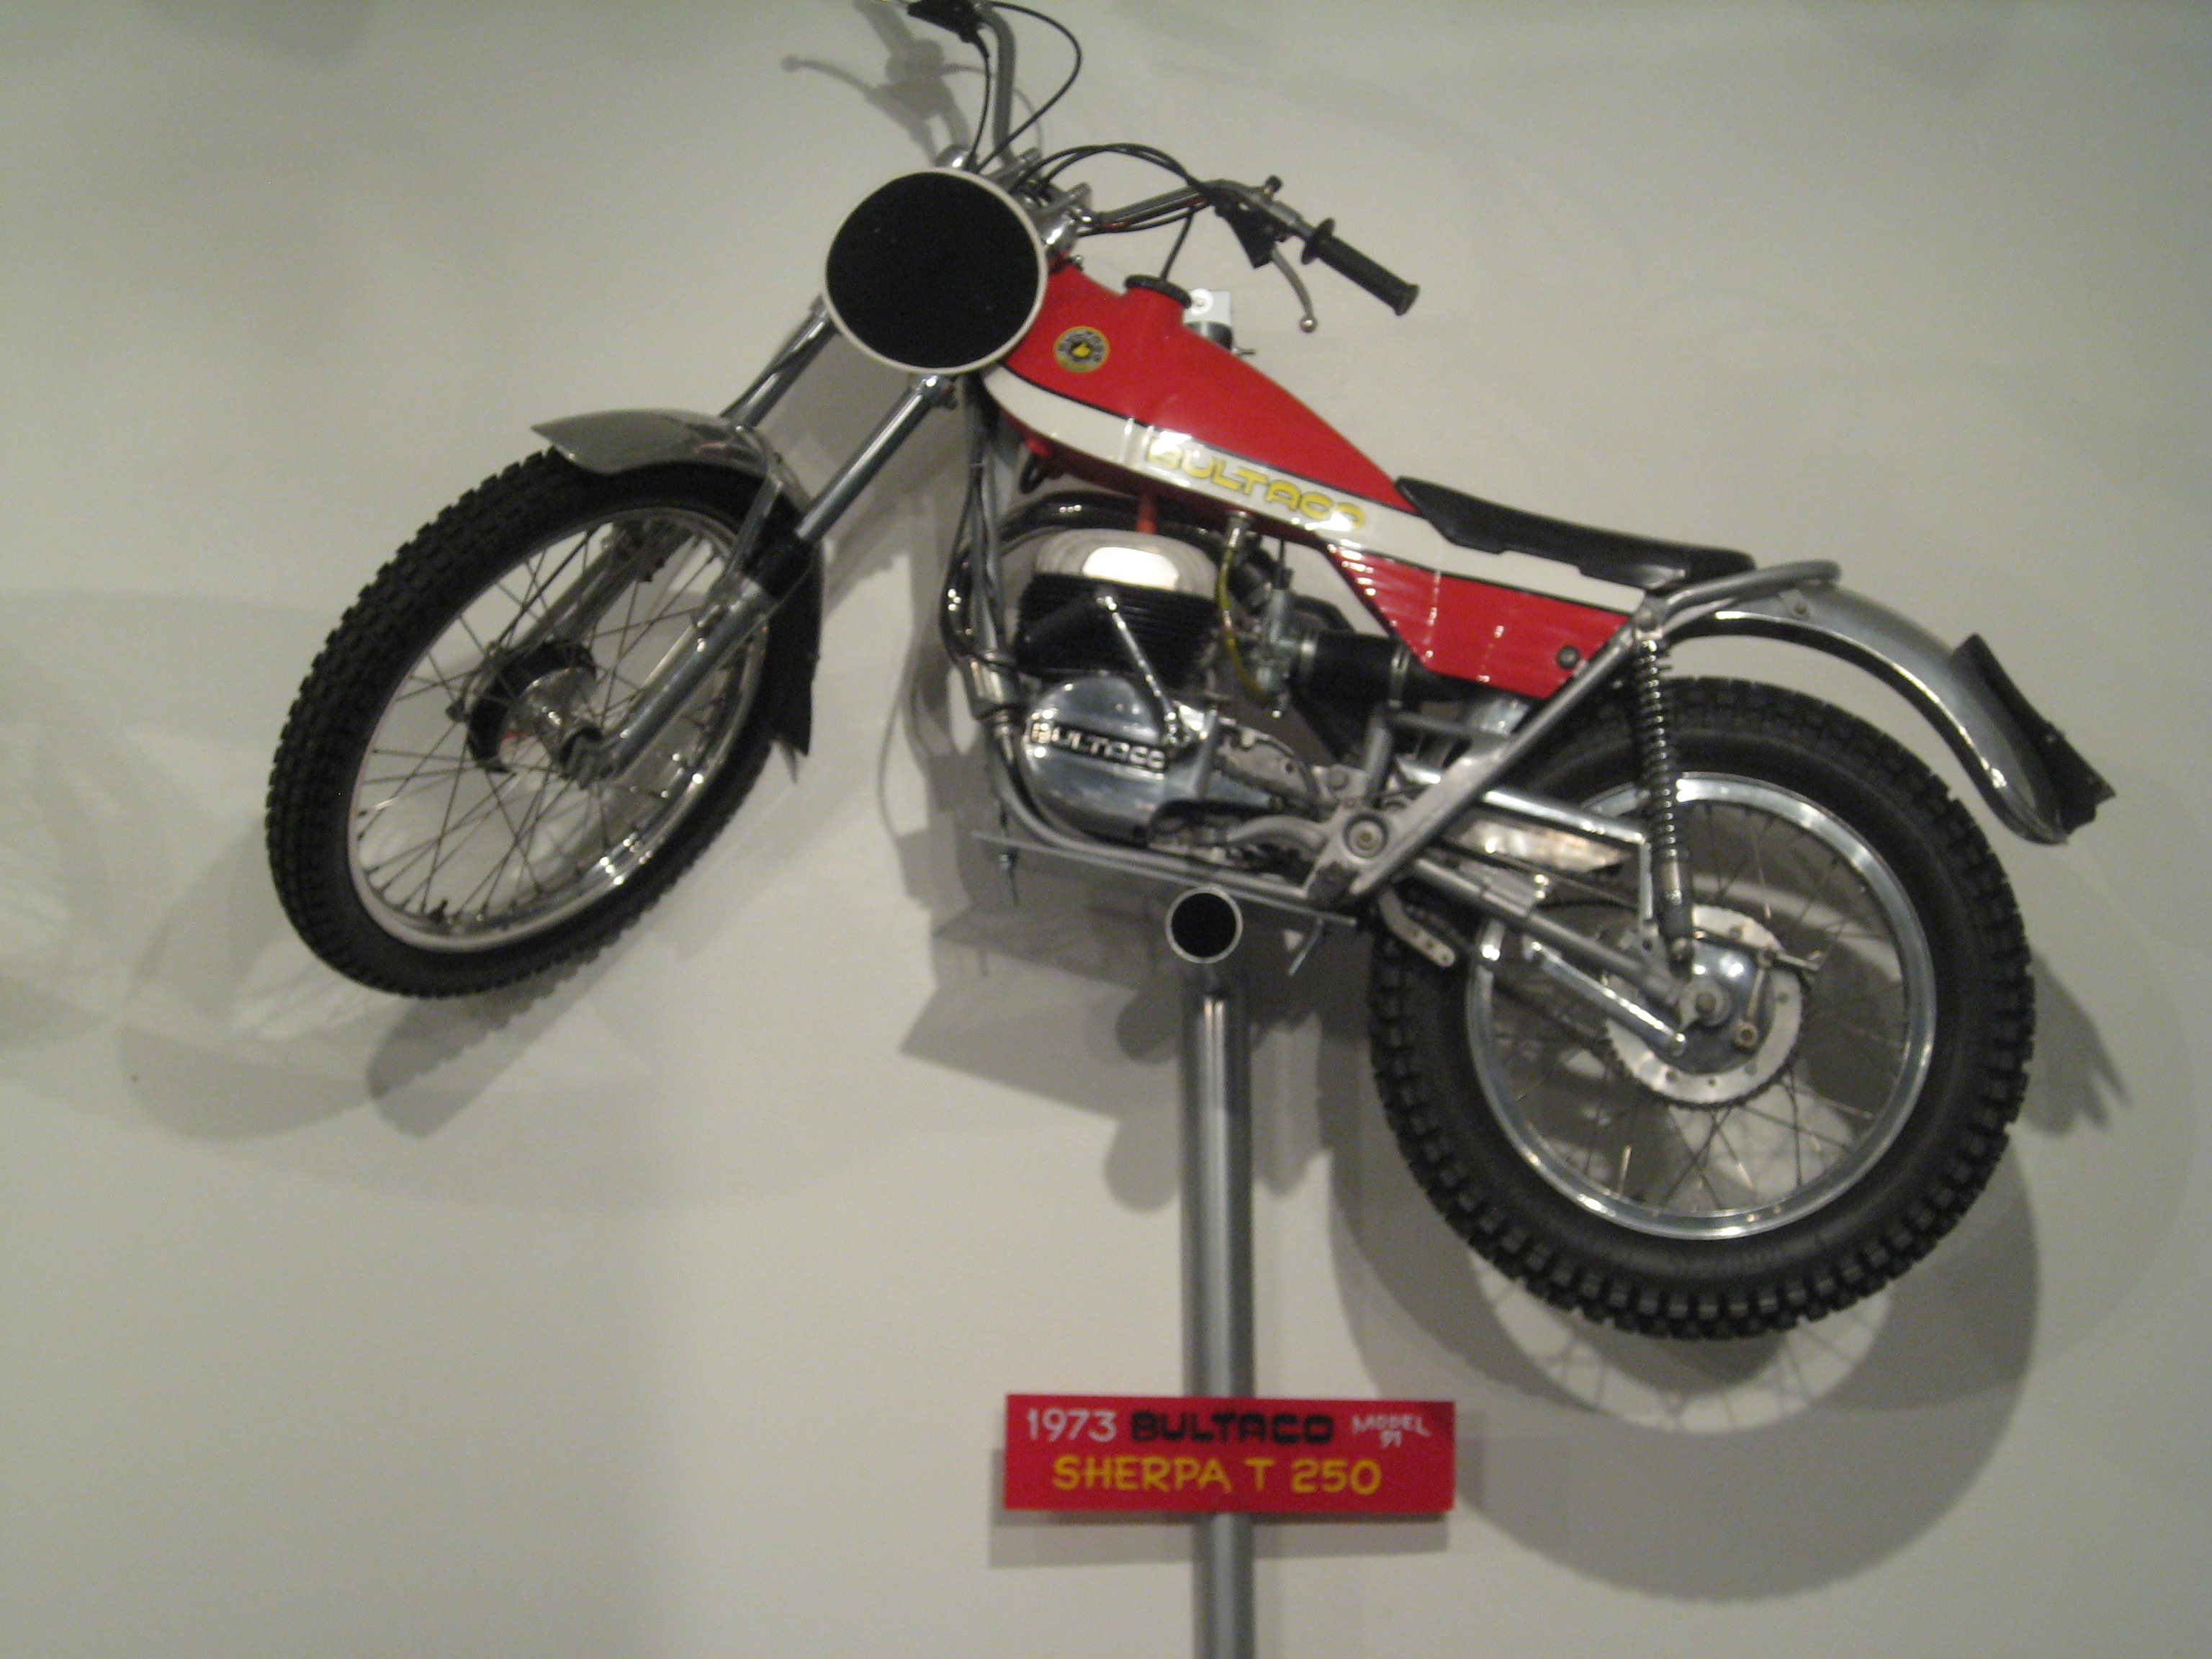 Bultaco model 91 Sherpa T